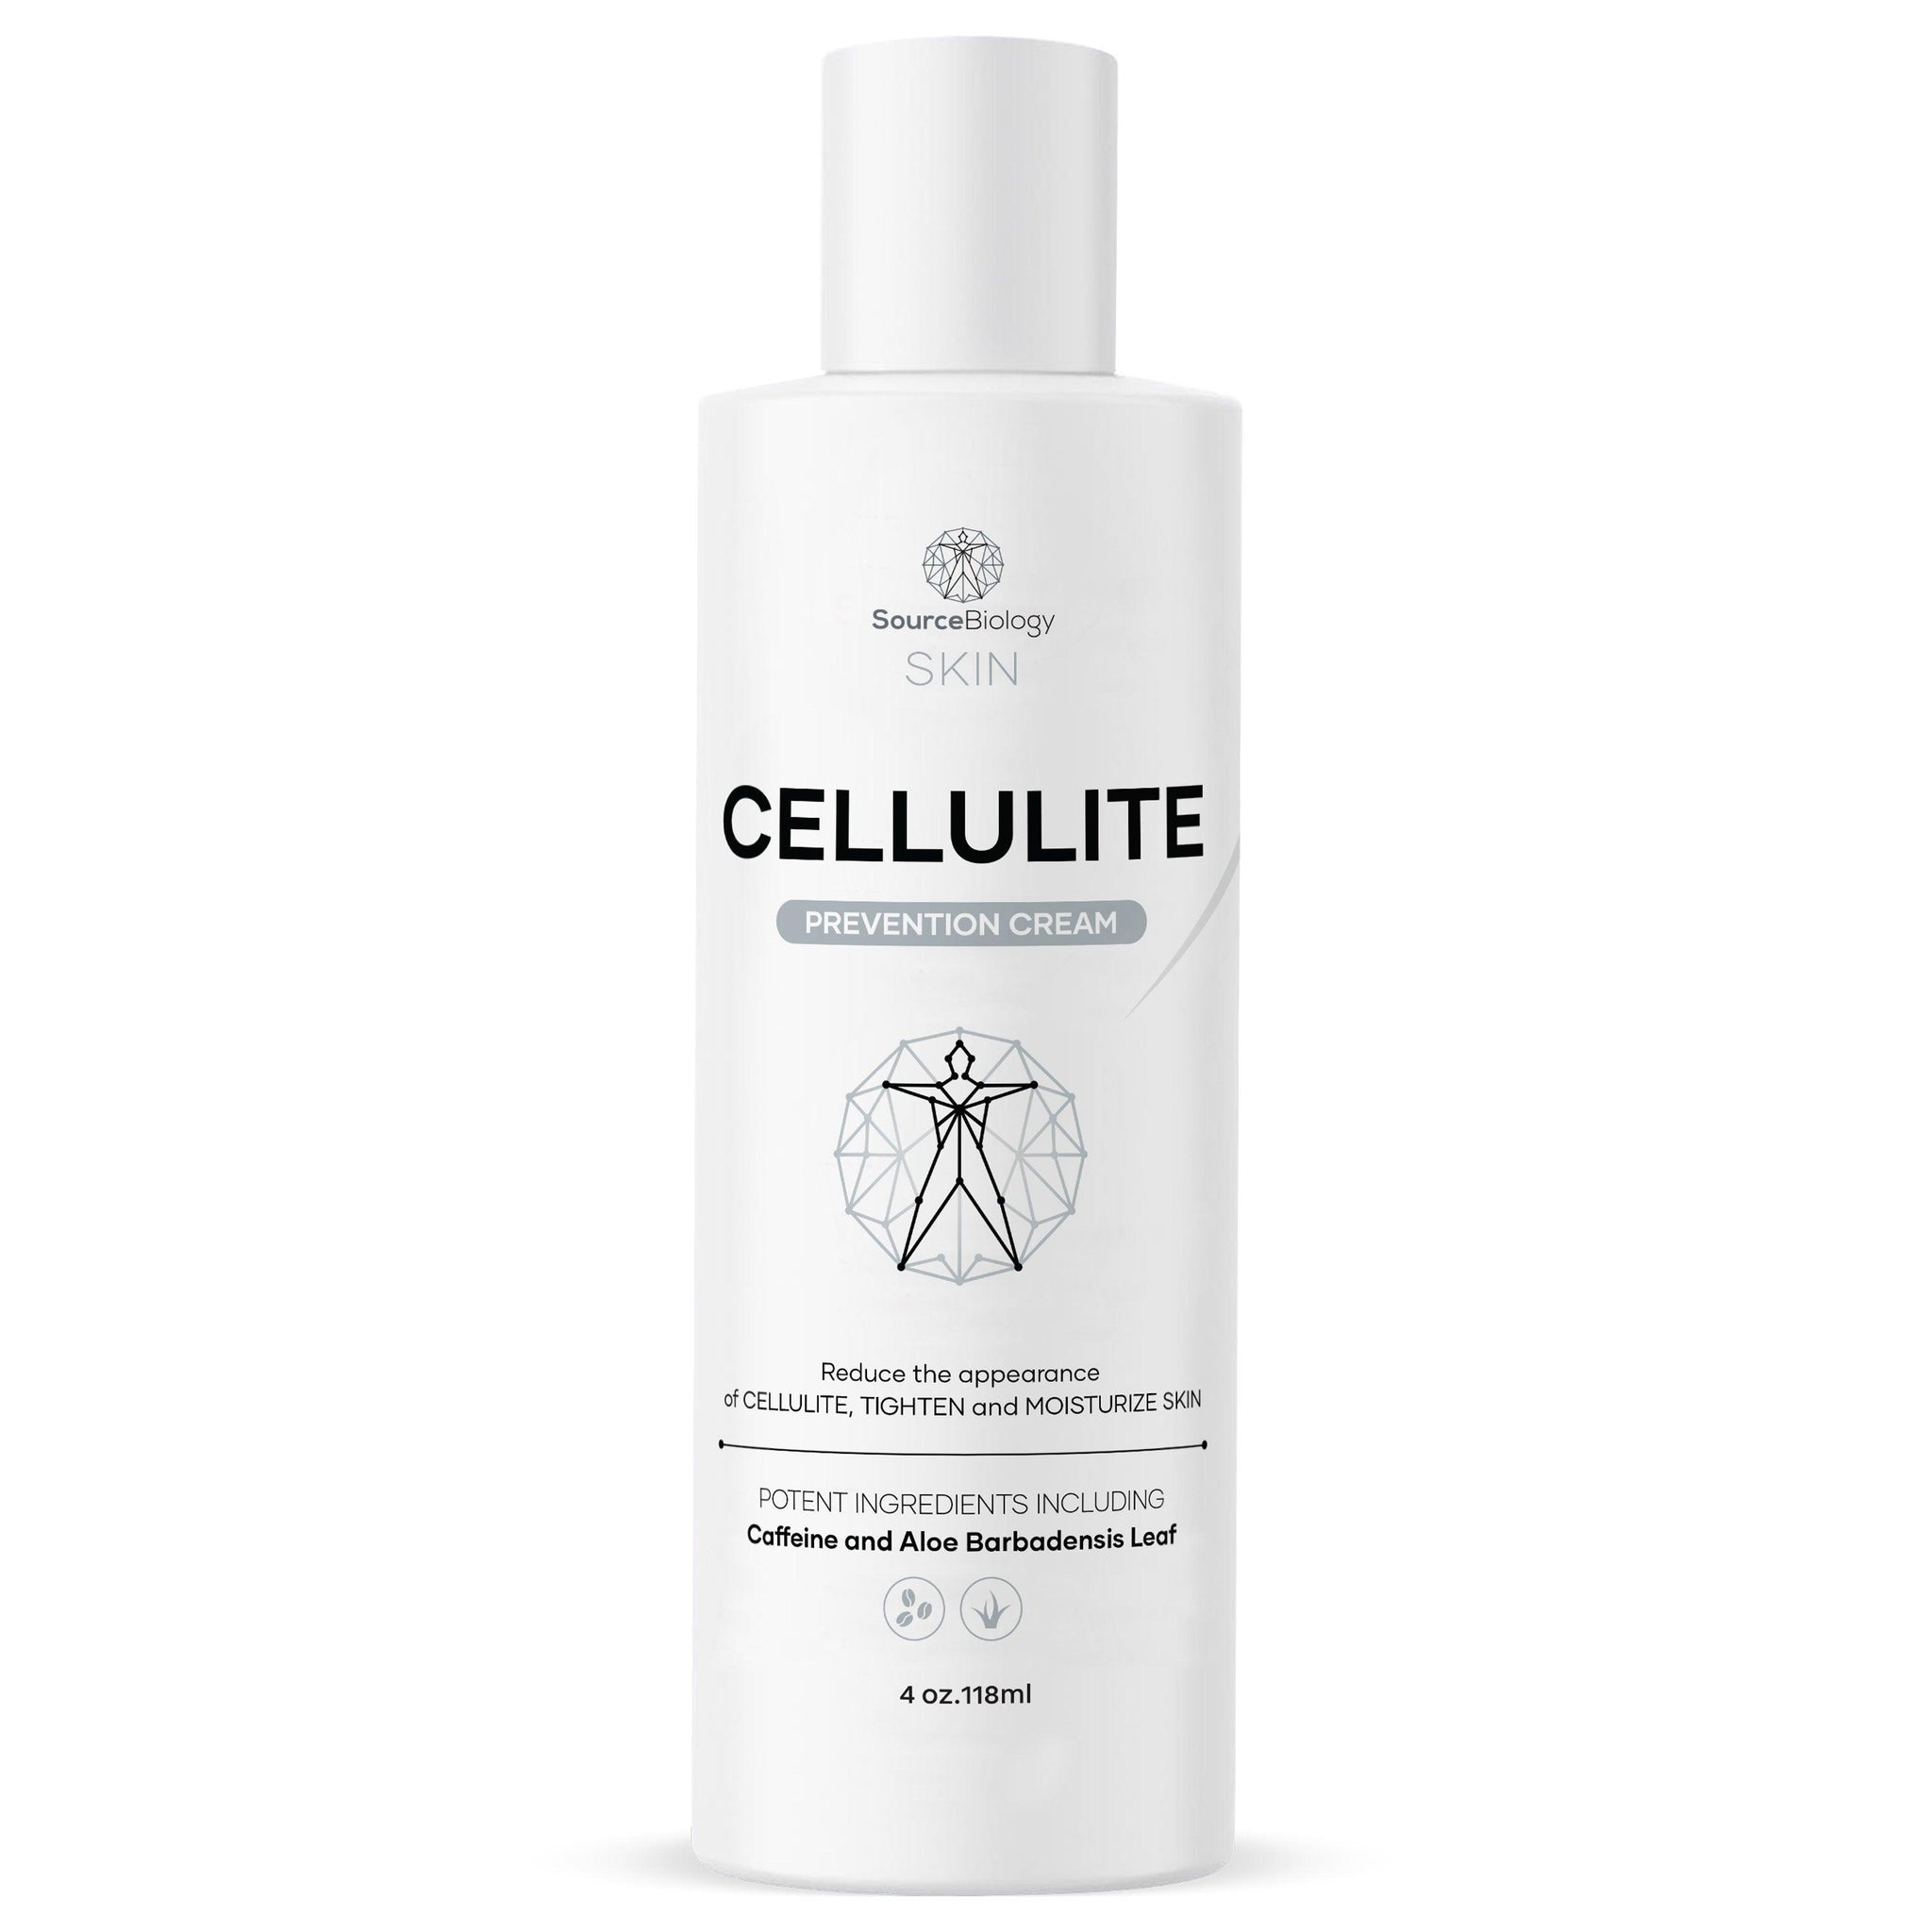 Cellulite Prevention Cream